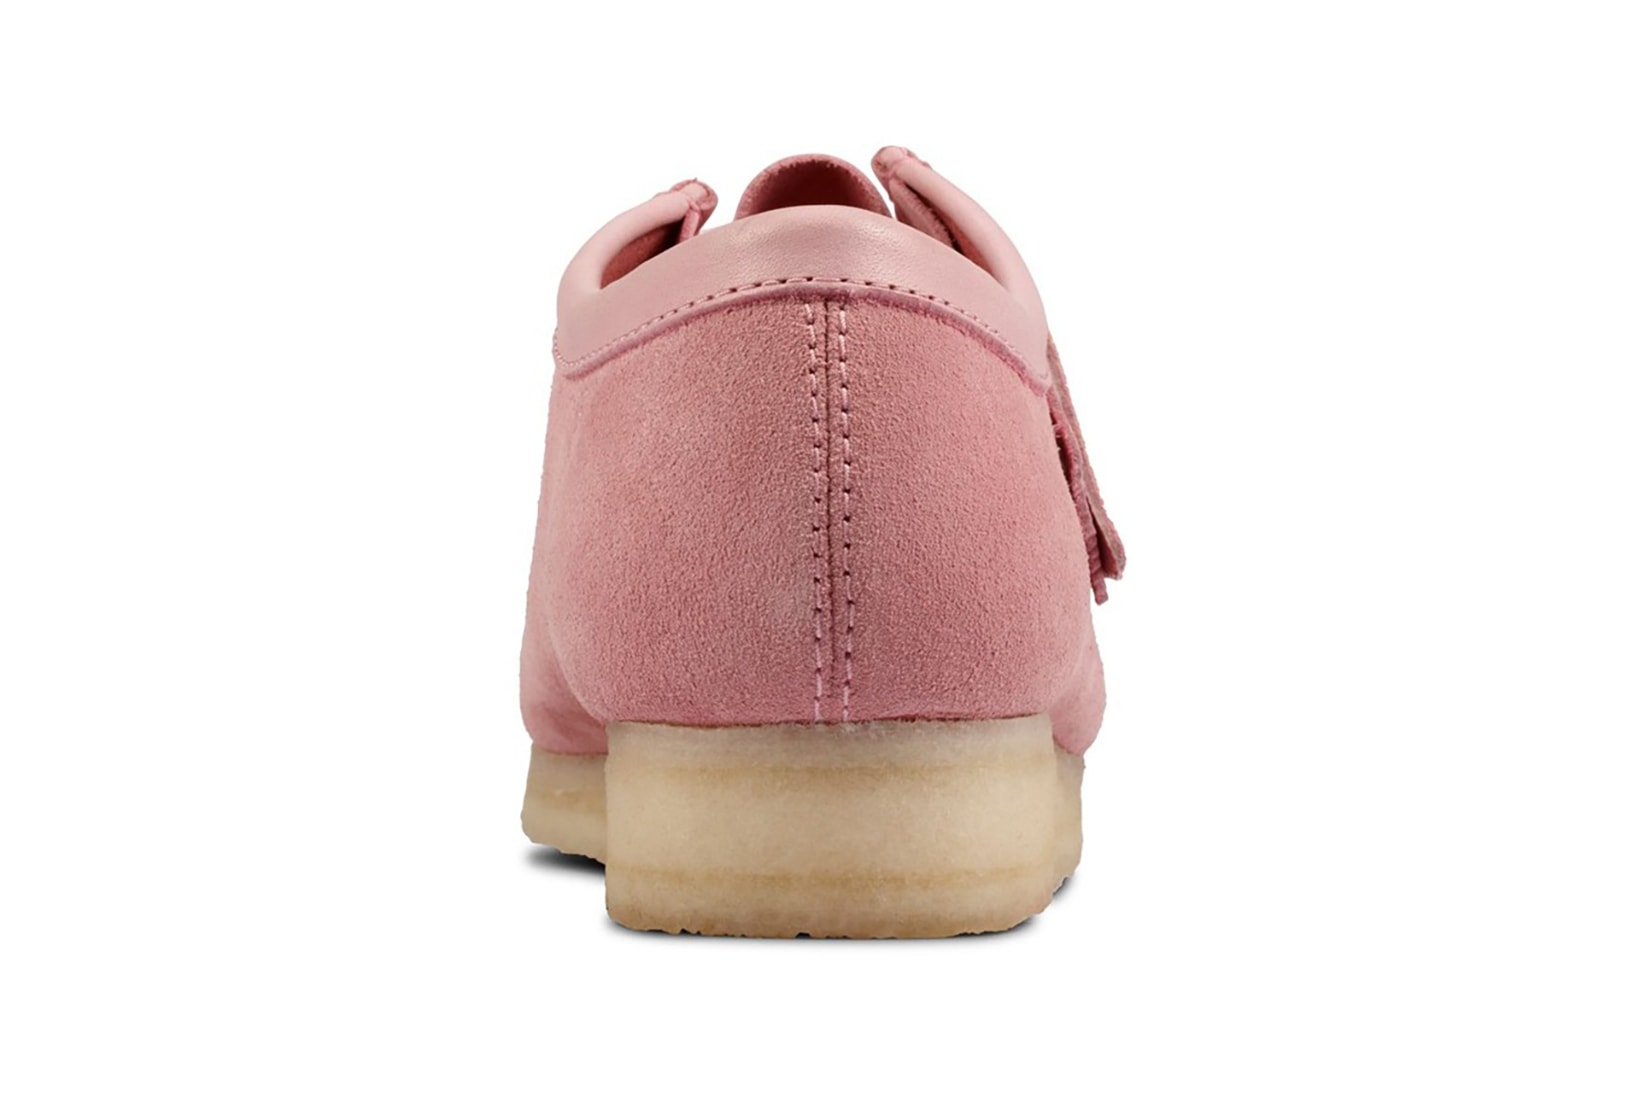 clarks originals combi wallabee pastel pink rose colorway footwear shoes heel